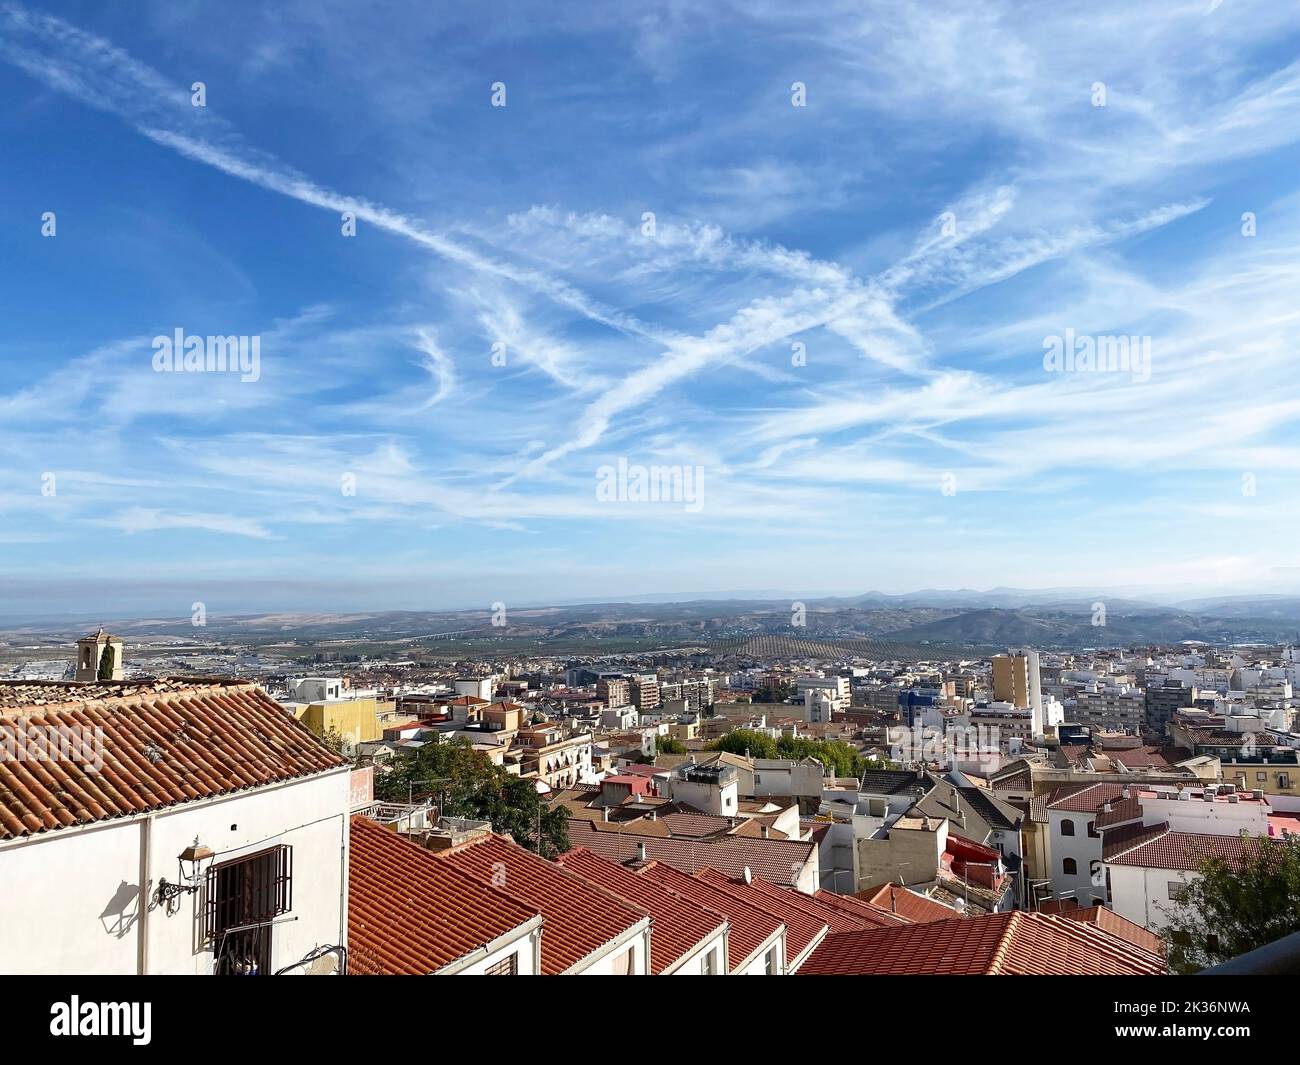 Szenische Aufnahme von Jaen Stadt an einem sonnigen Tag, herrliche Aussicht und schönes Wetter, Spanien. Hochwertige Fotos Stockfoto